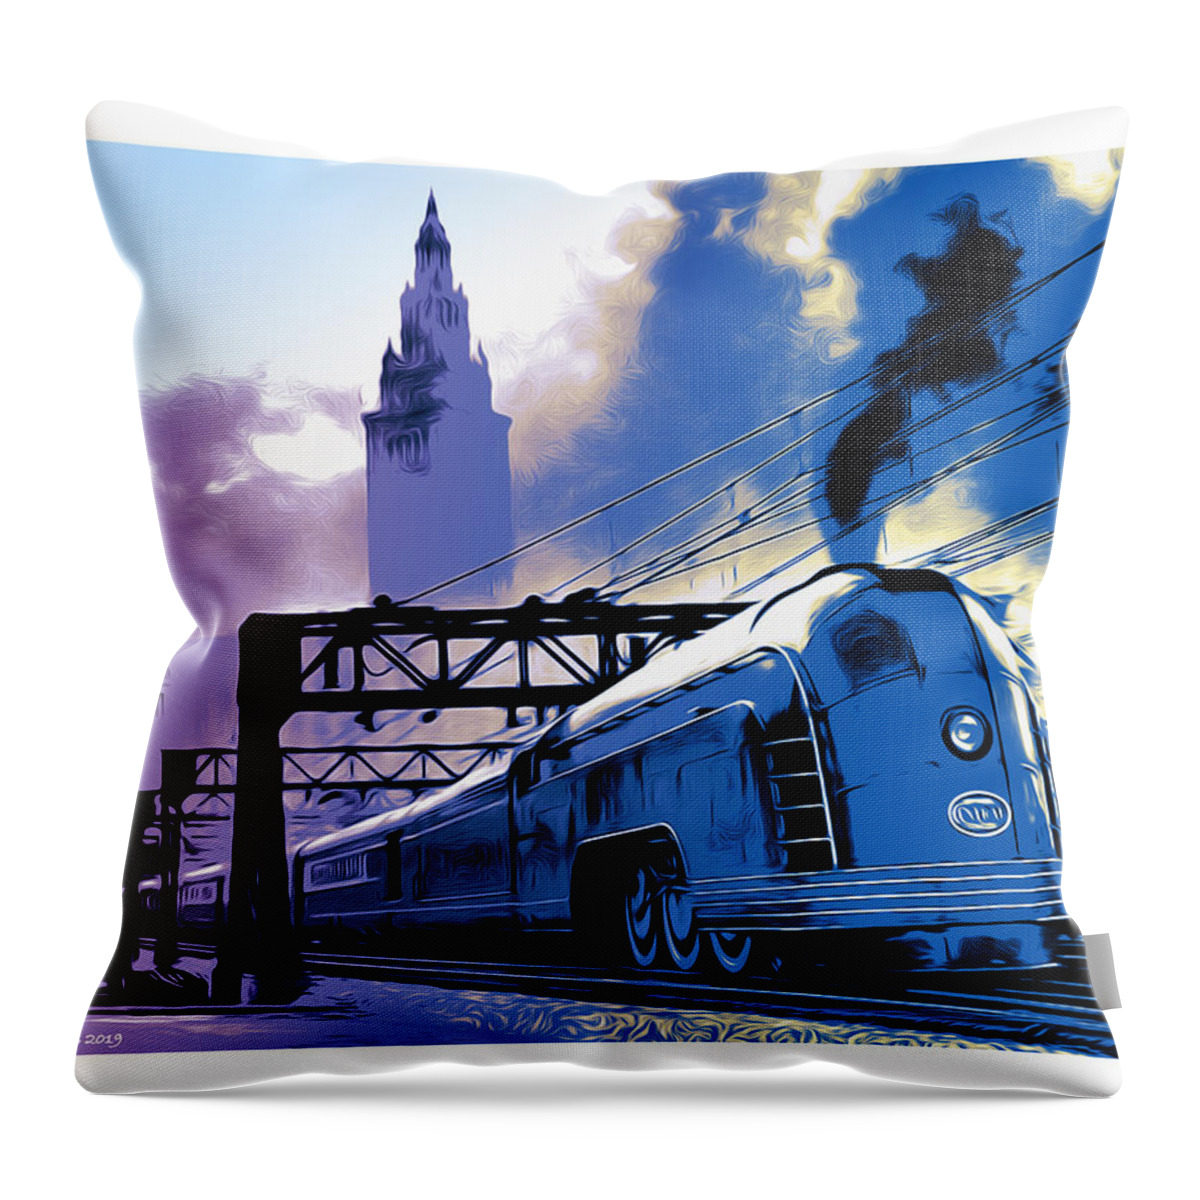 Art Deco Throw Pillow featuring the digital art Art Deco Train by Greg Joens